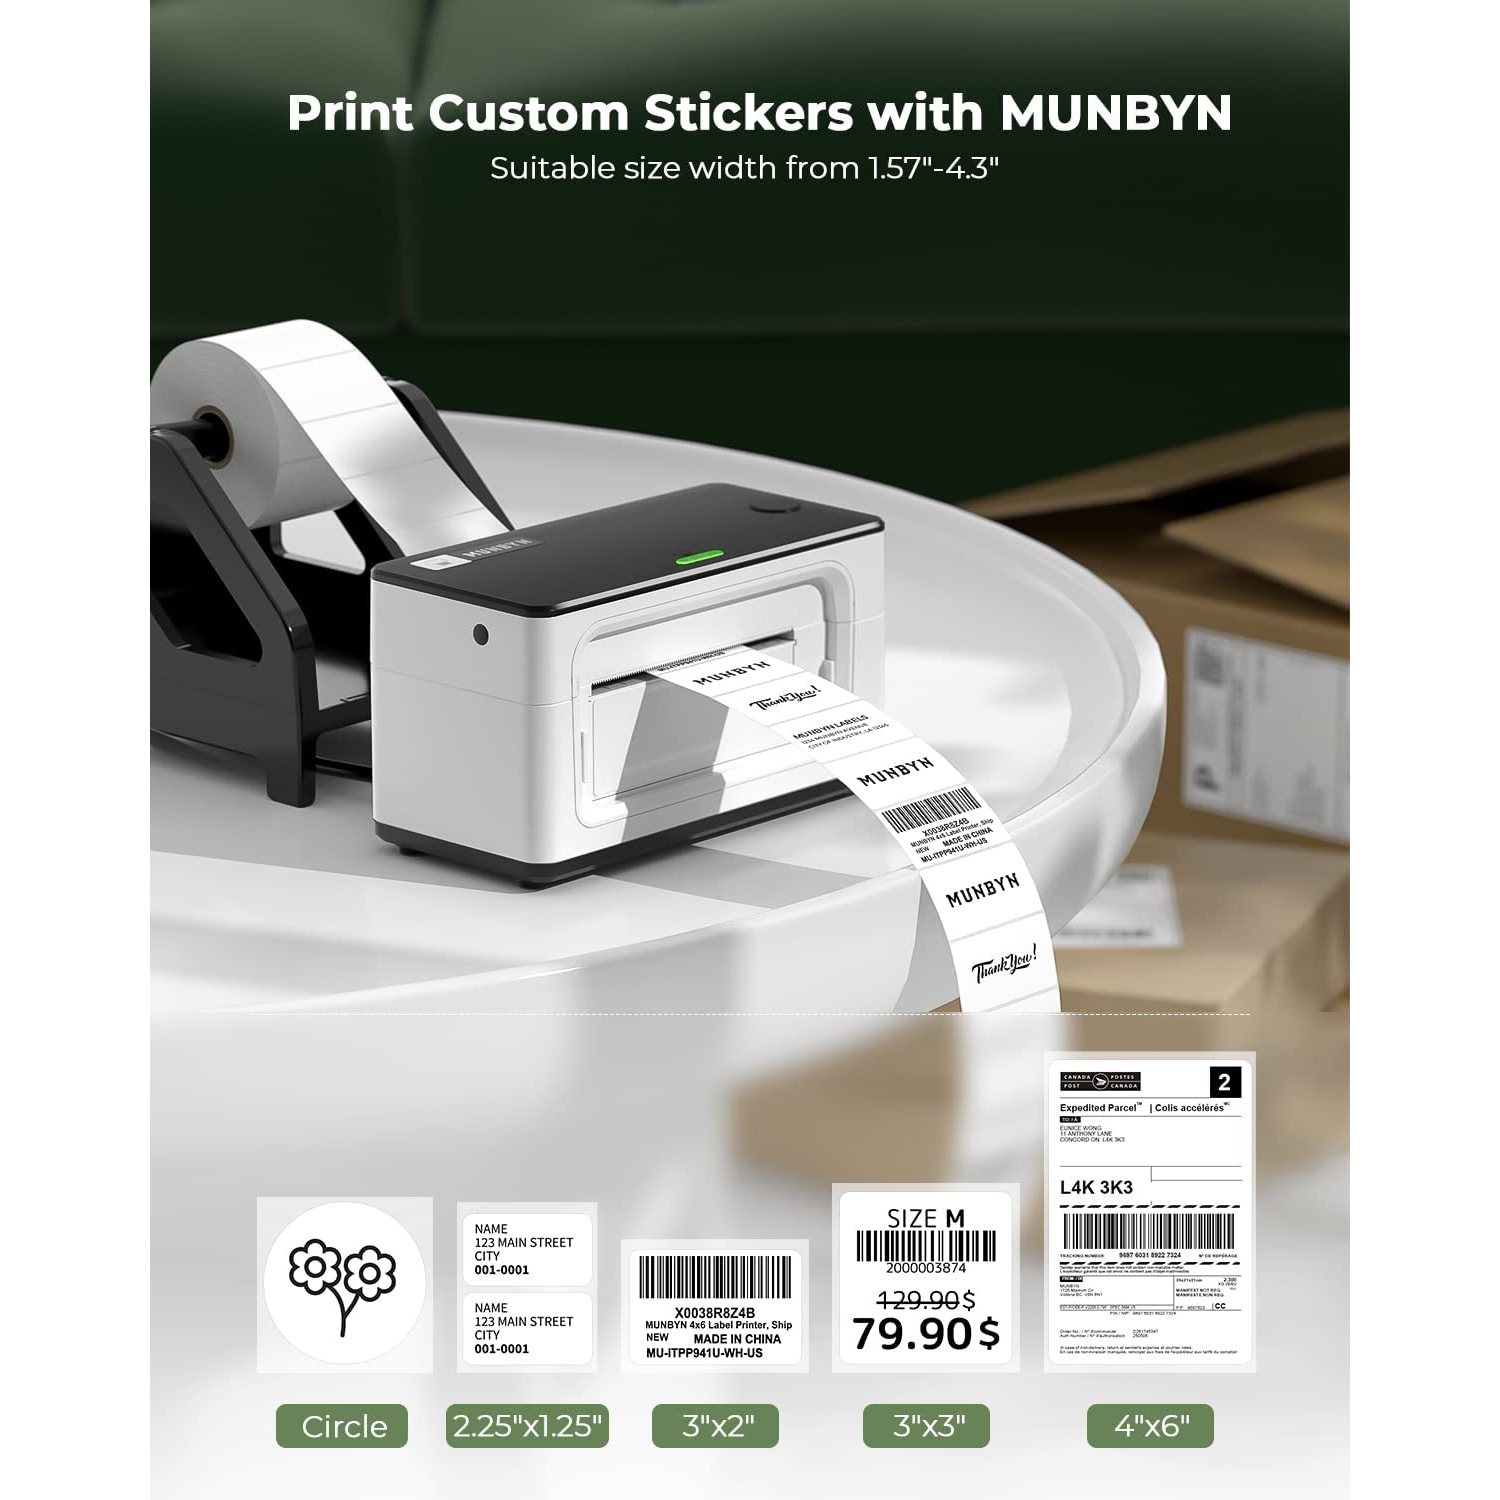 MUNBYN Imprimante d'étiquettes Thermique 4x6, Imprimante